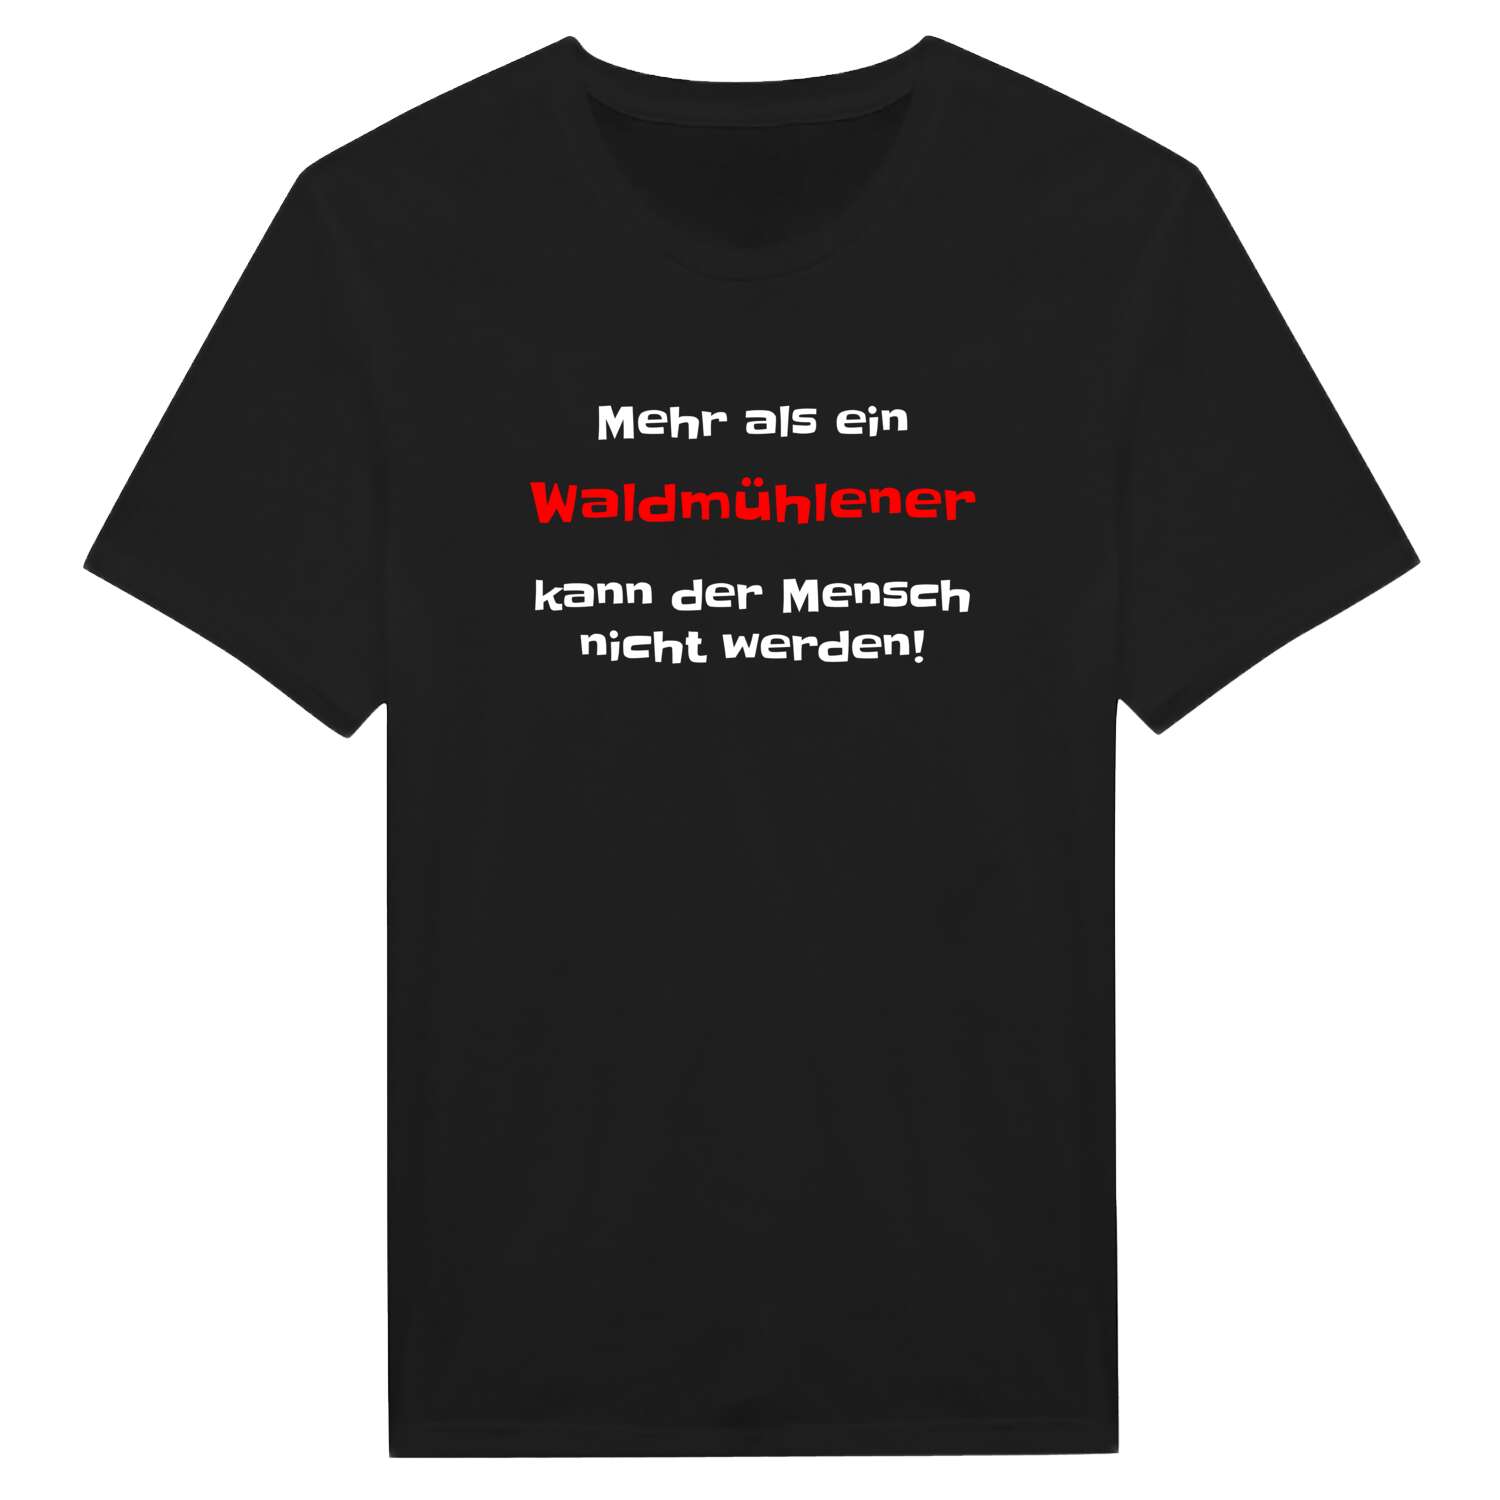 Waldmühlen T-Shirt »Mehr als ein«